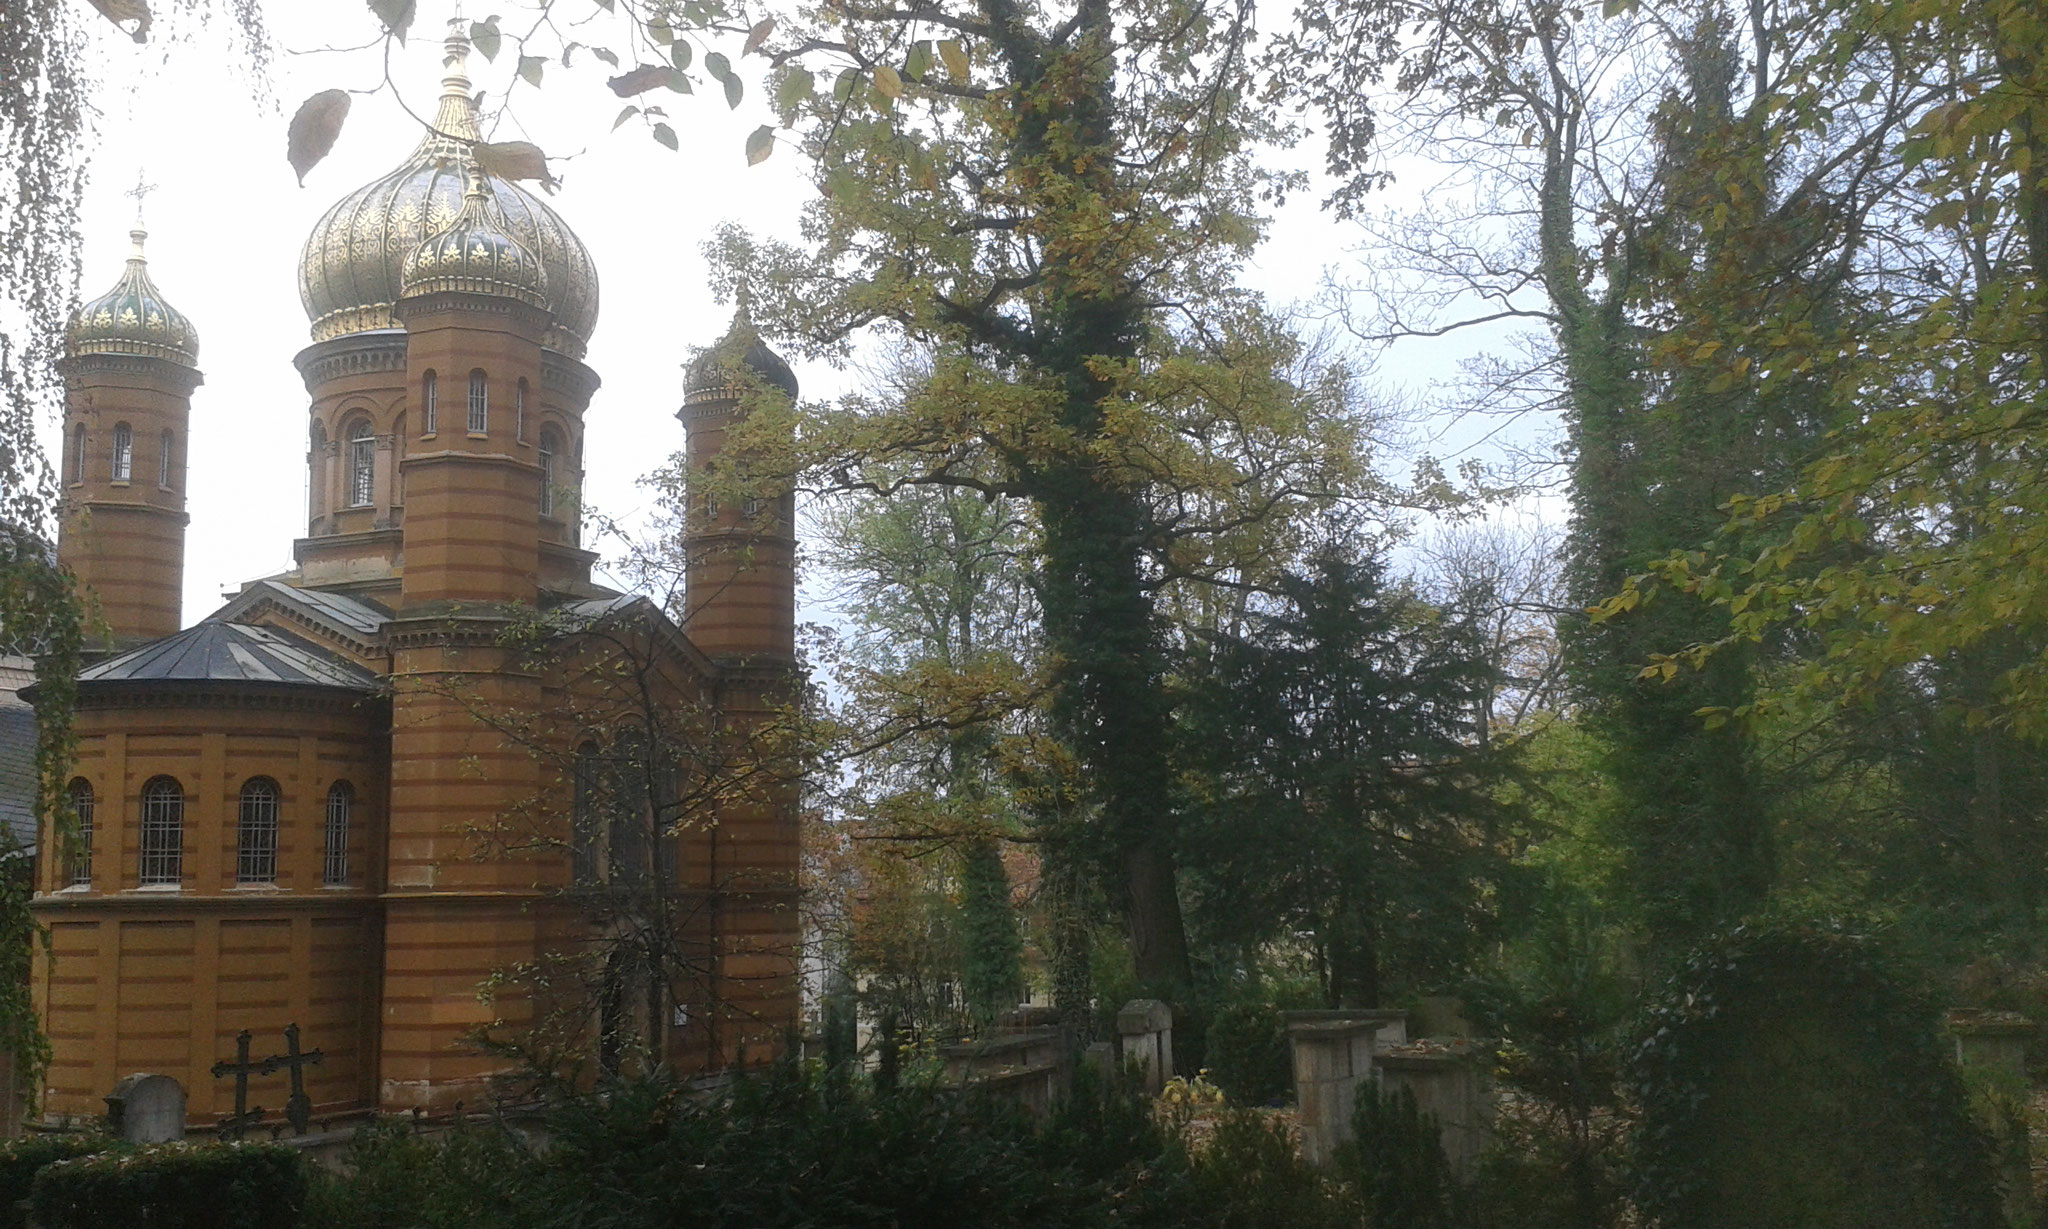 Die russ. othodoxe Kirche, in ca. 400 m Entfernung